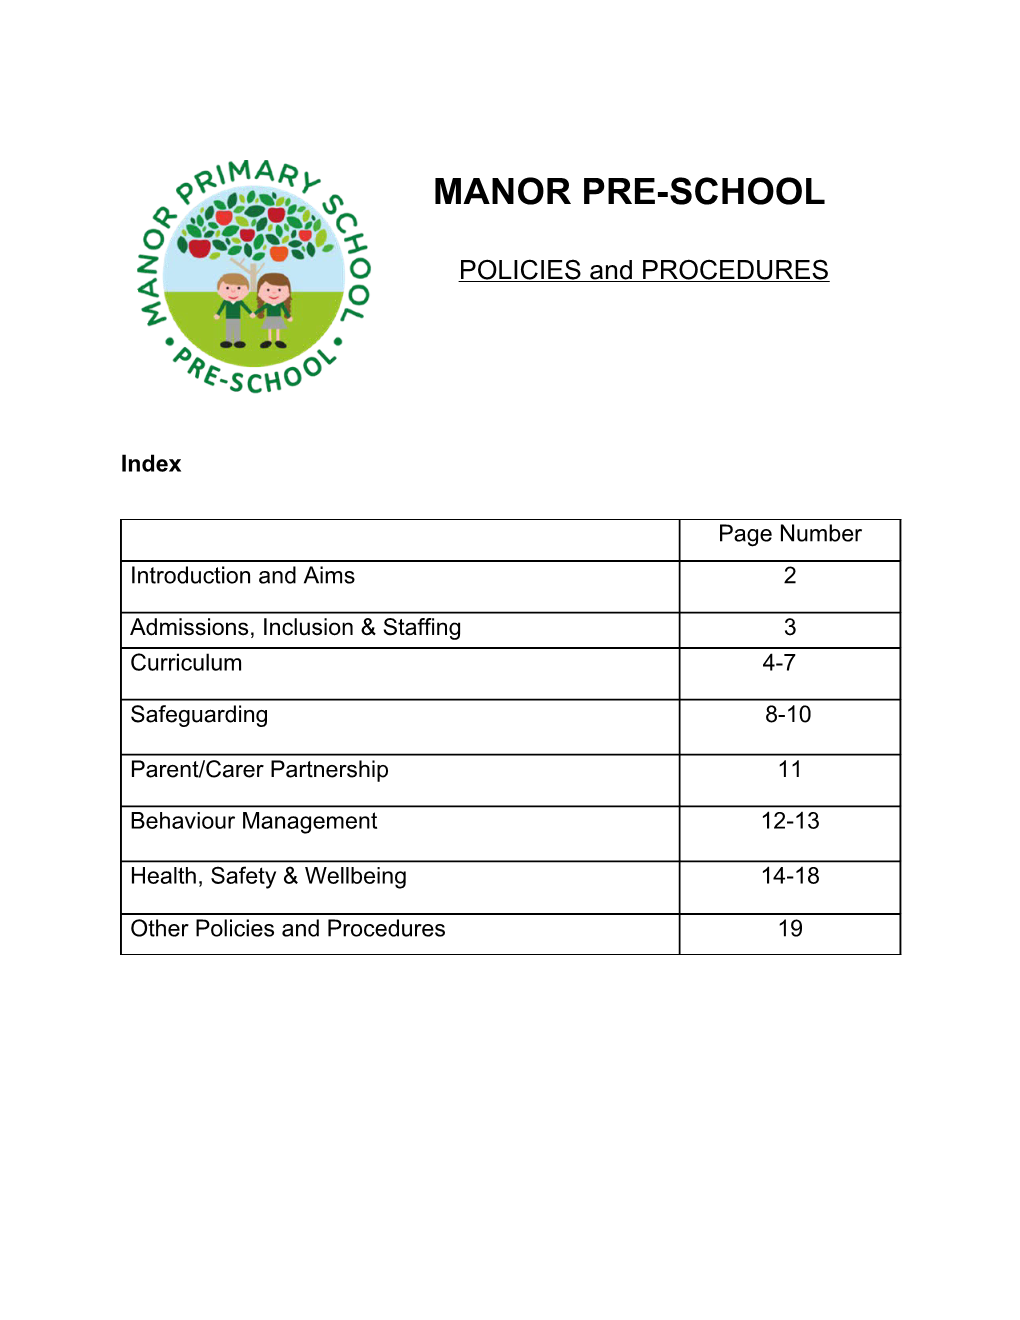 Manor Pre-School